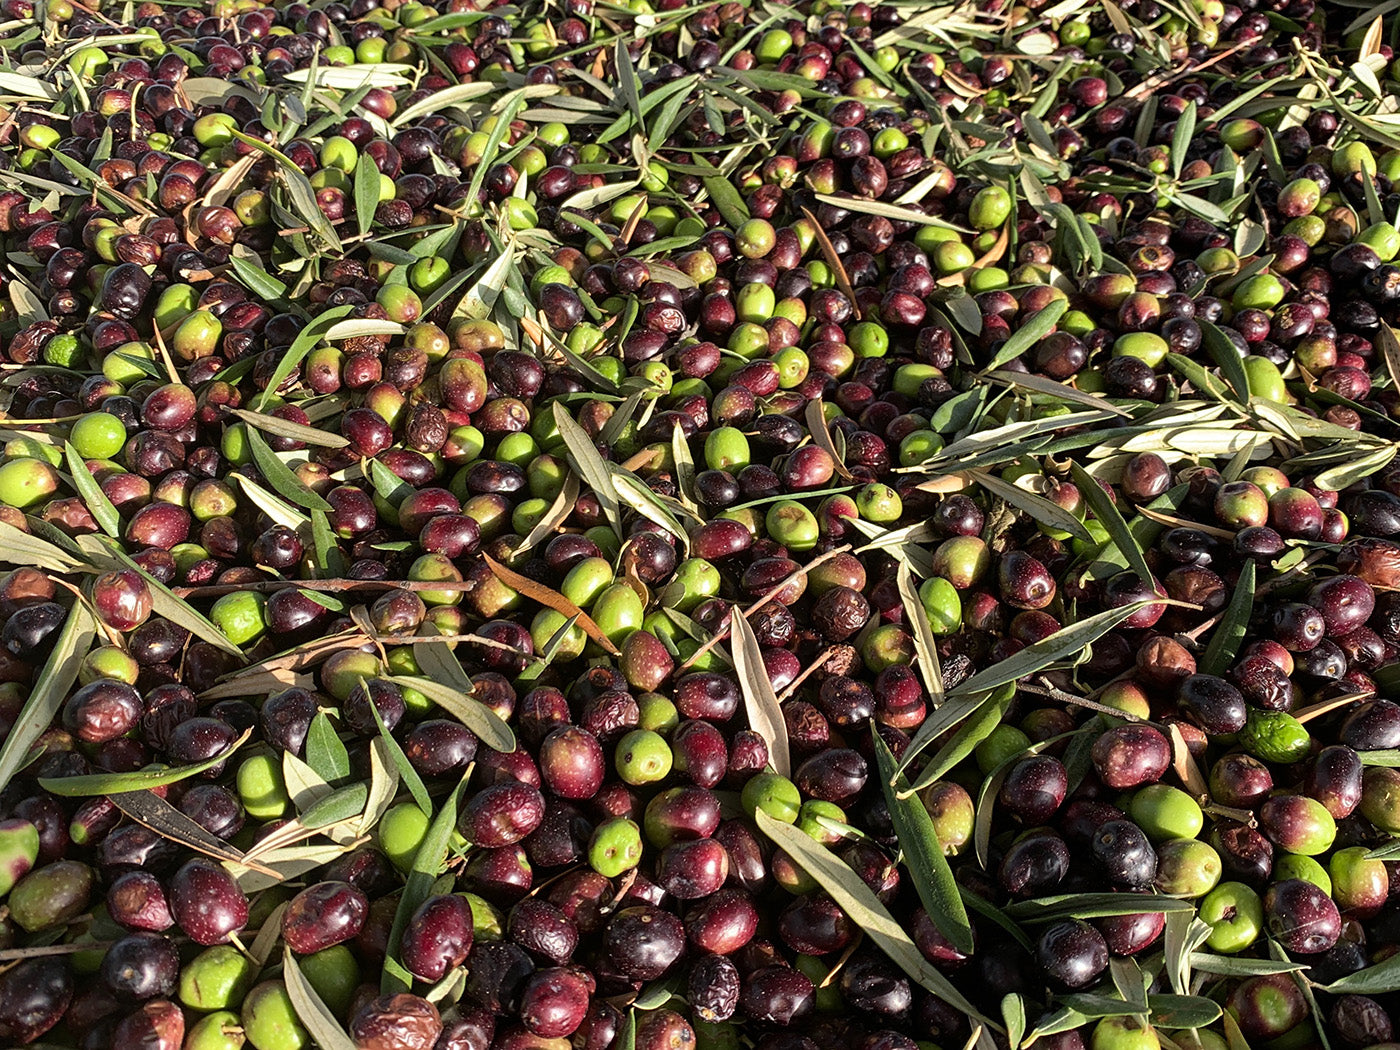 Casa Gomez vers geplukte olijven tijdens de olijfoogst